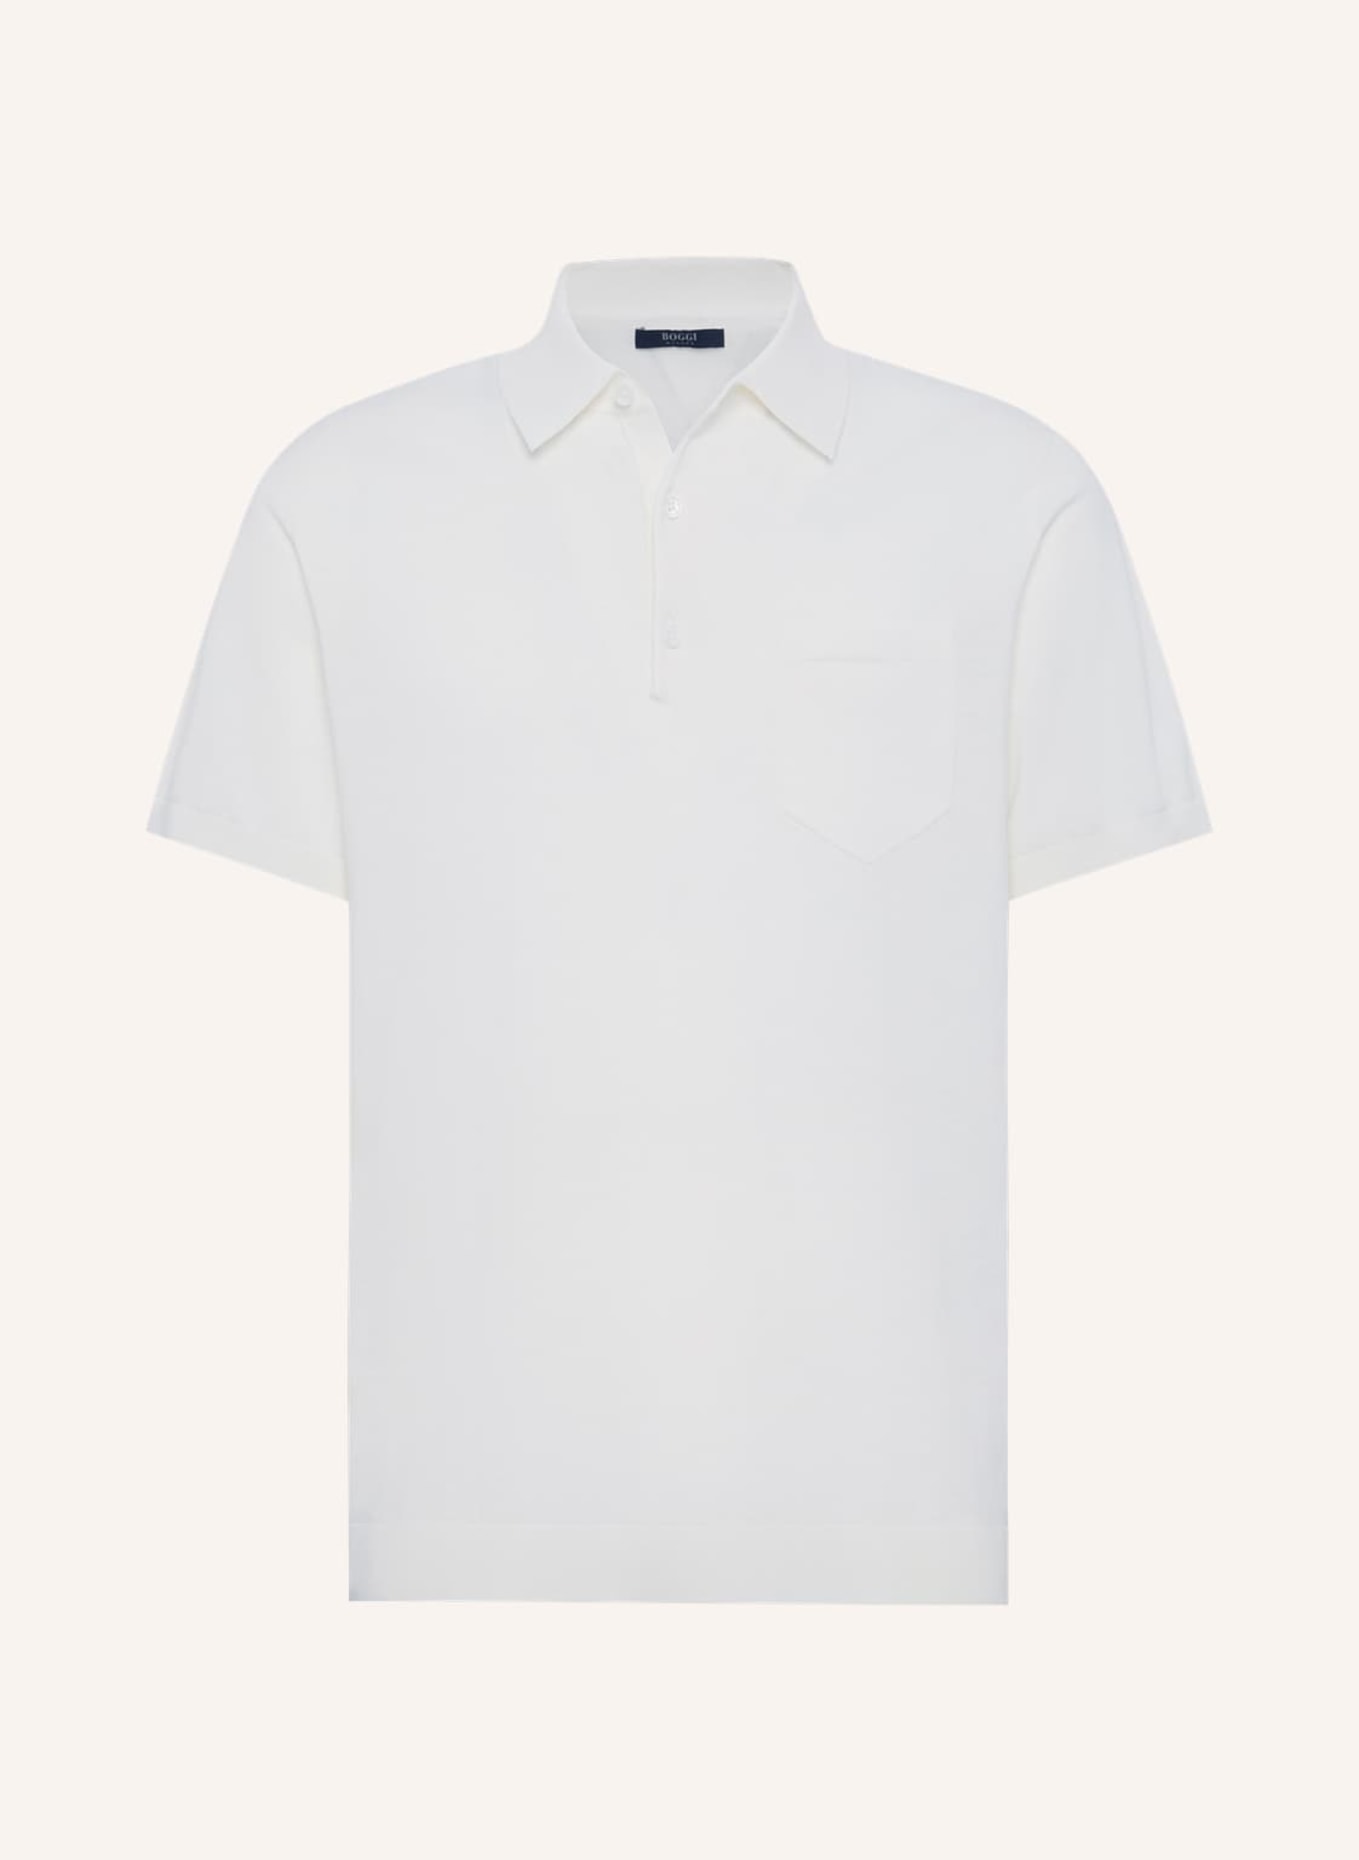 BOGGI MILANO Strick-Poloshirt aus Leinen, Farbe: WEISS (Bild 1)